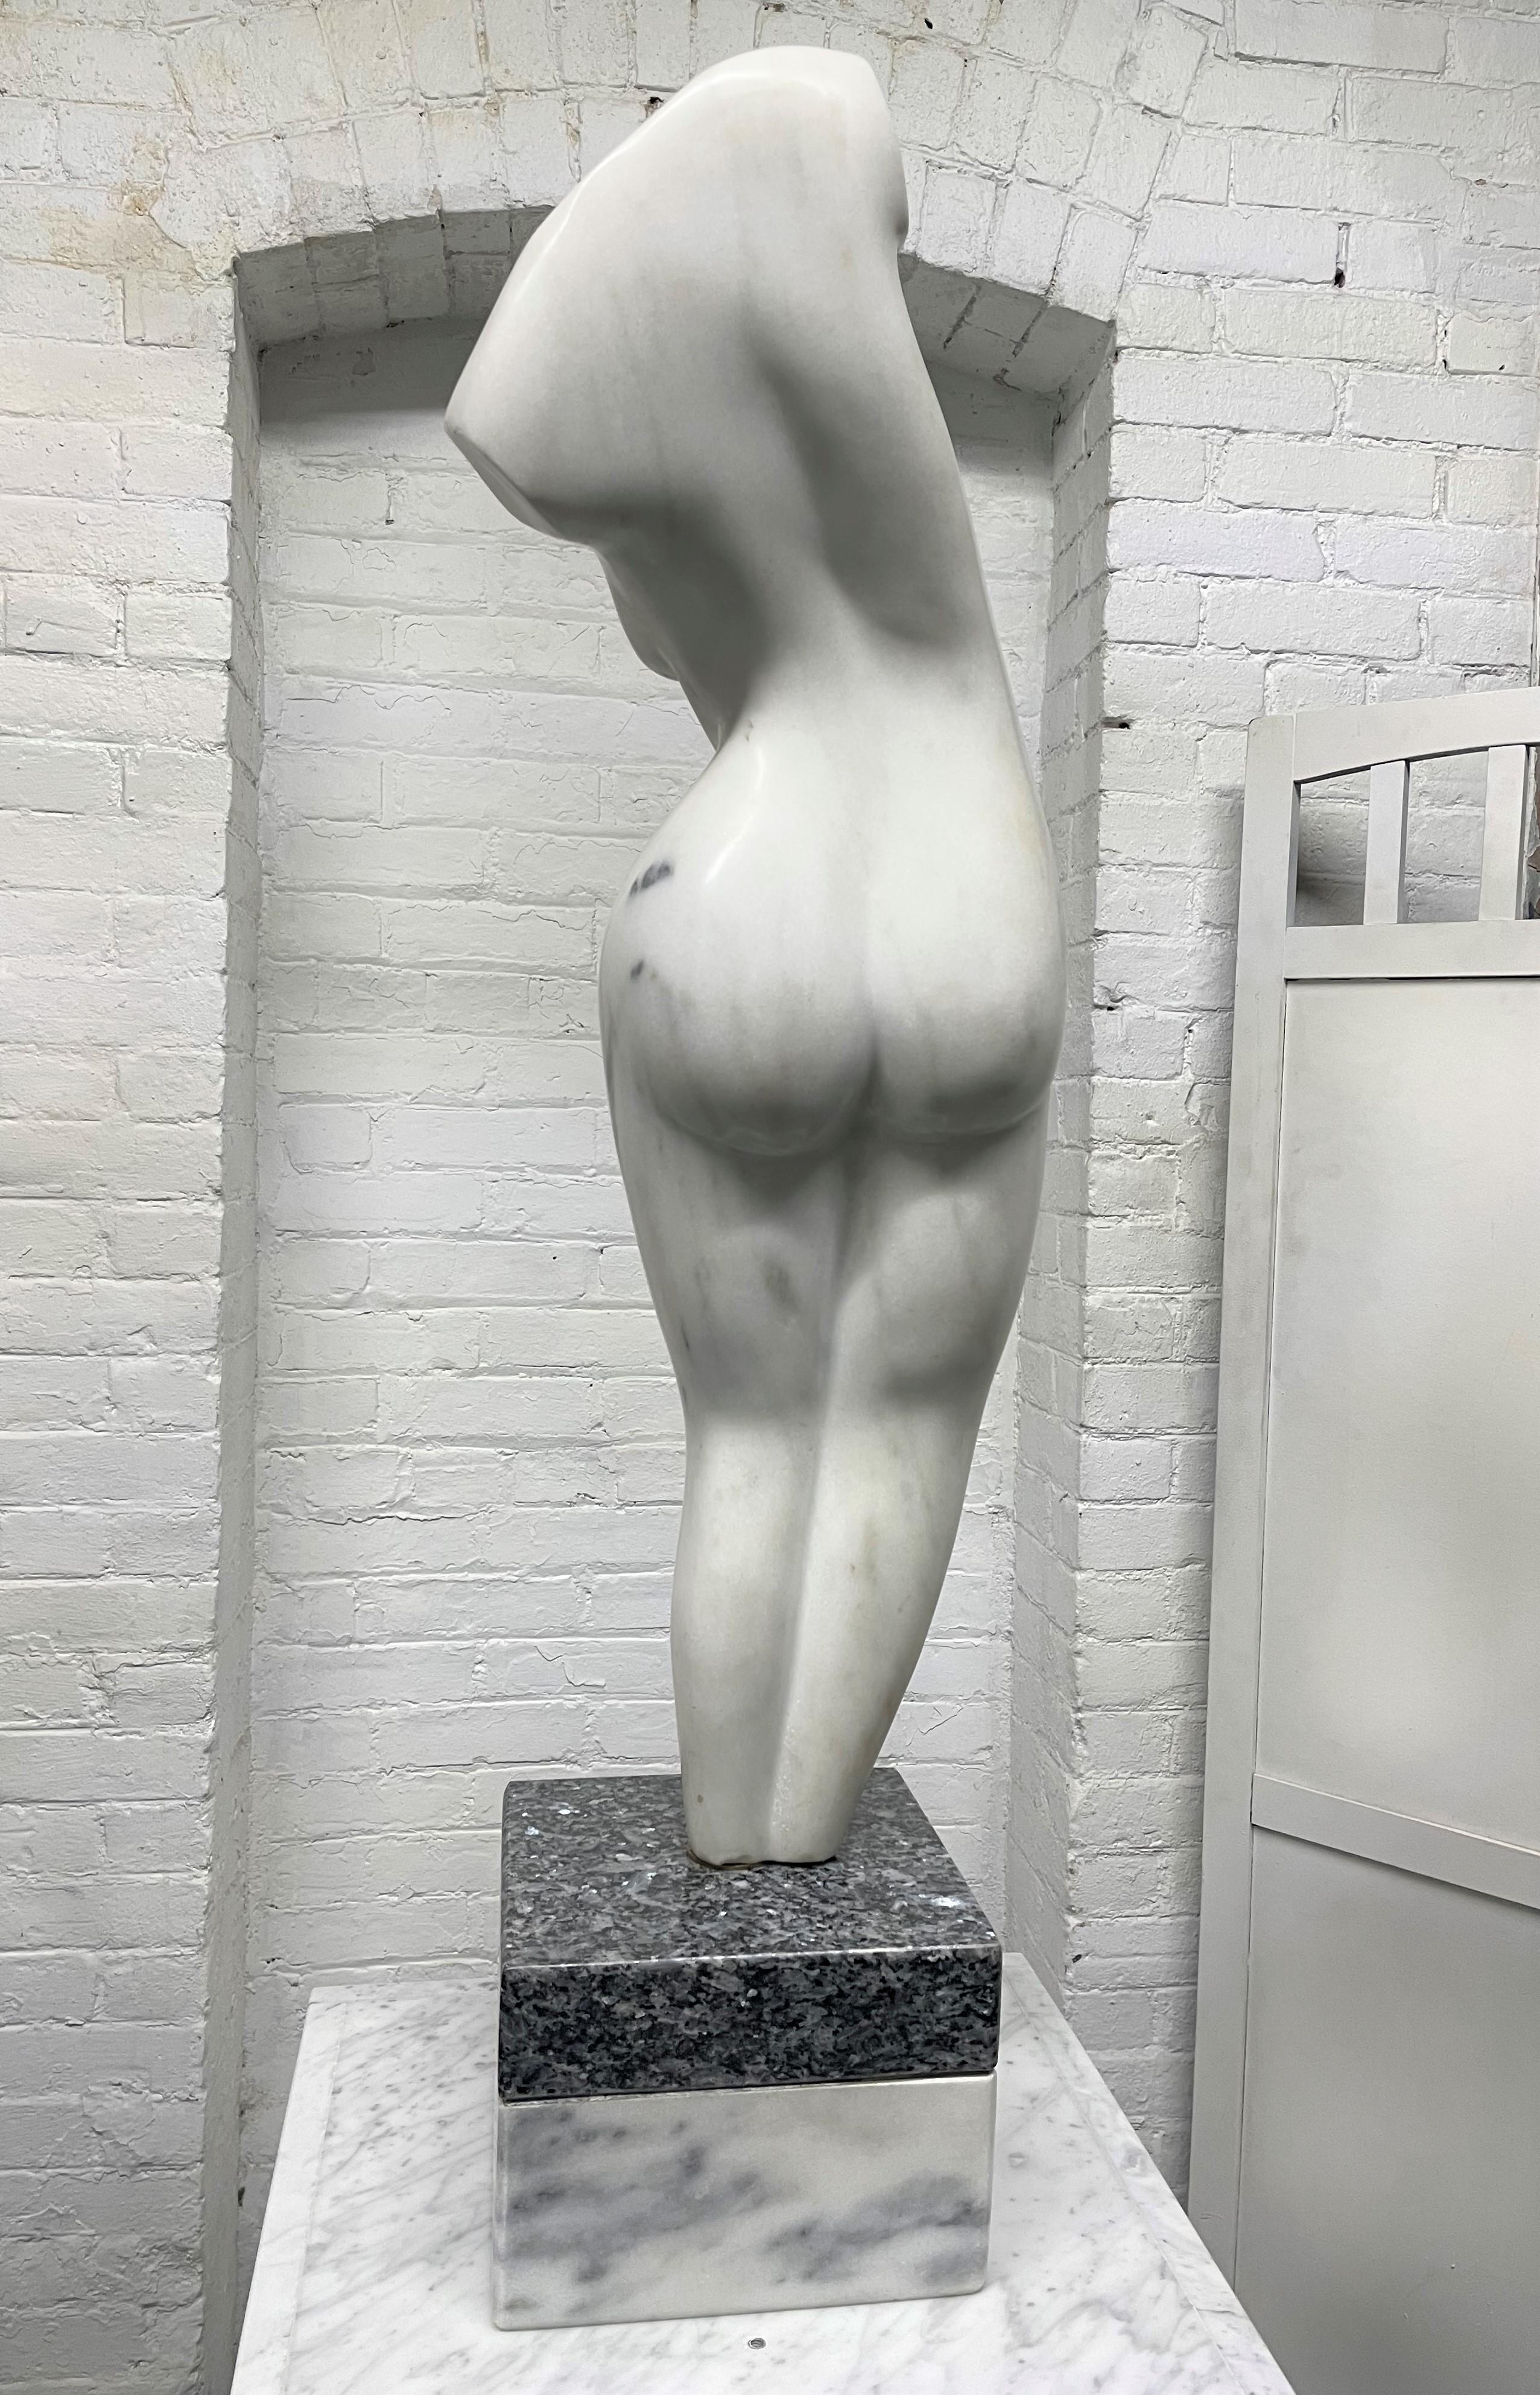 Grande sculpture féminine italienne en marbre de Carrare sur piédestal. Date et signature au dos de la sculpture. La sculpture est également pivotante. La base inférieure de la sculpture, là où elle pivote, est en granit.